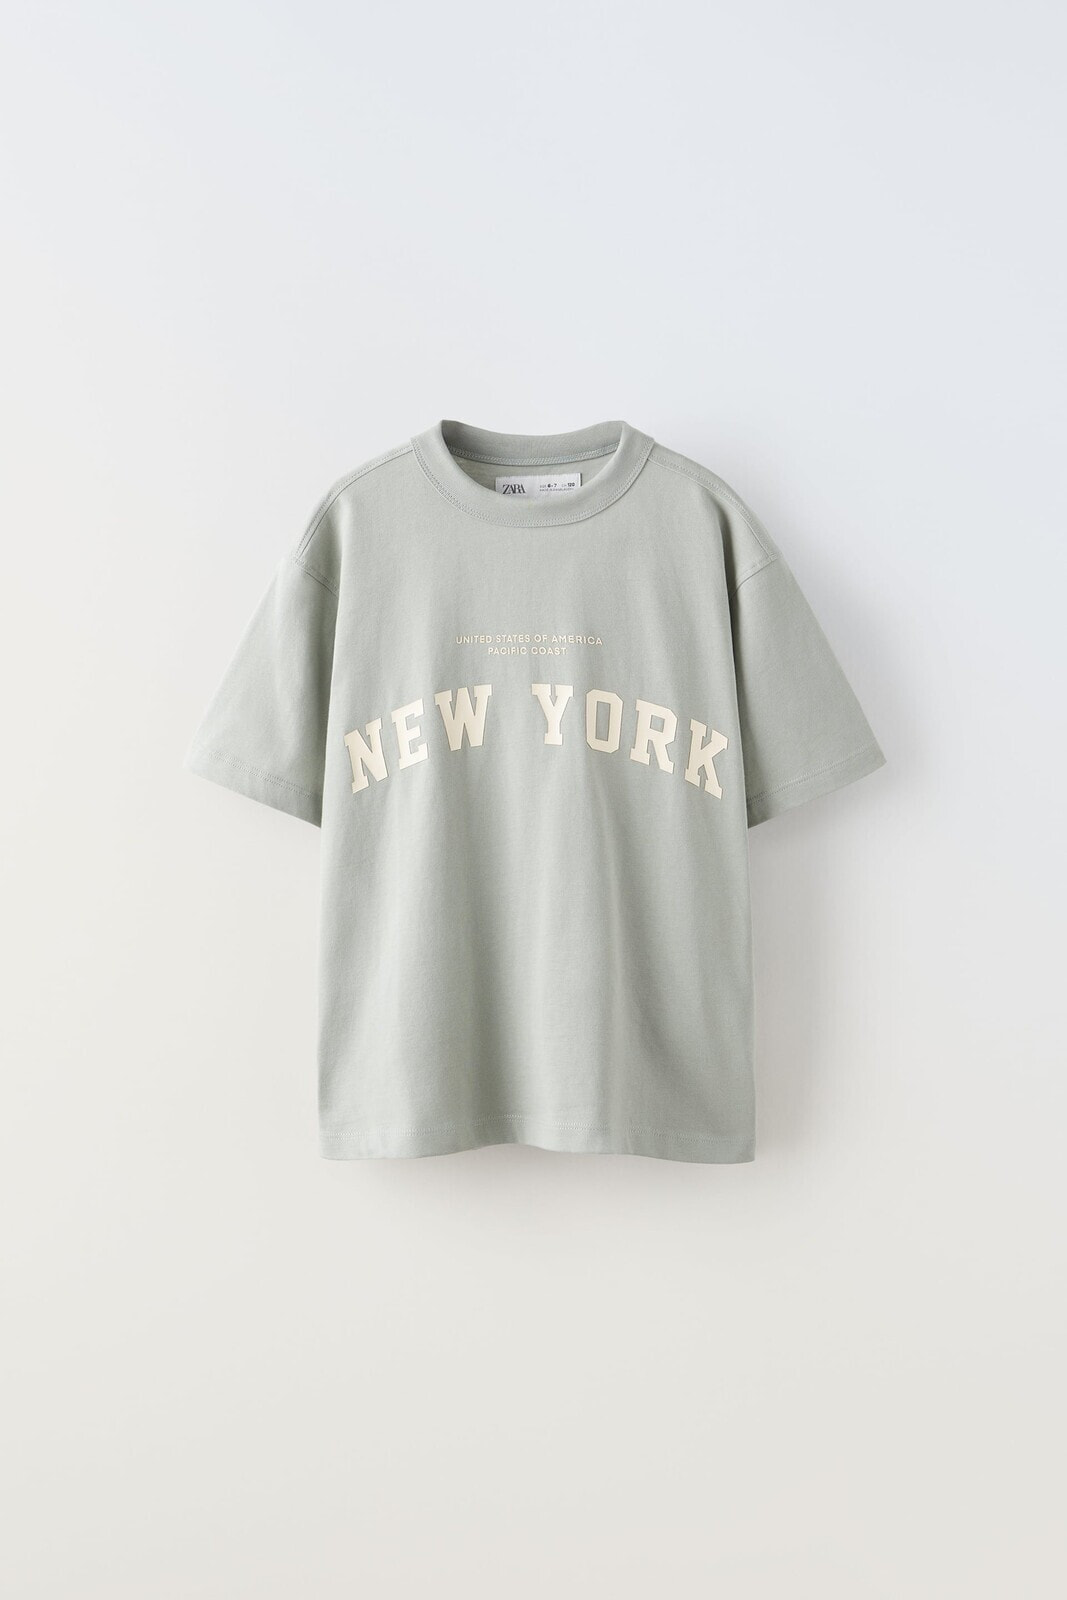 Raised new york t-shirt